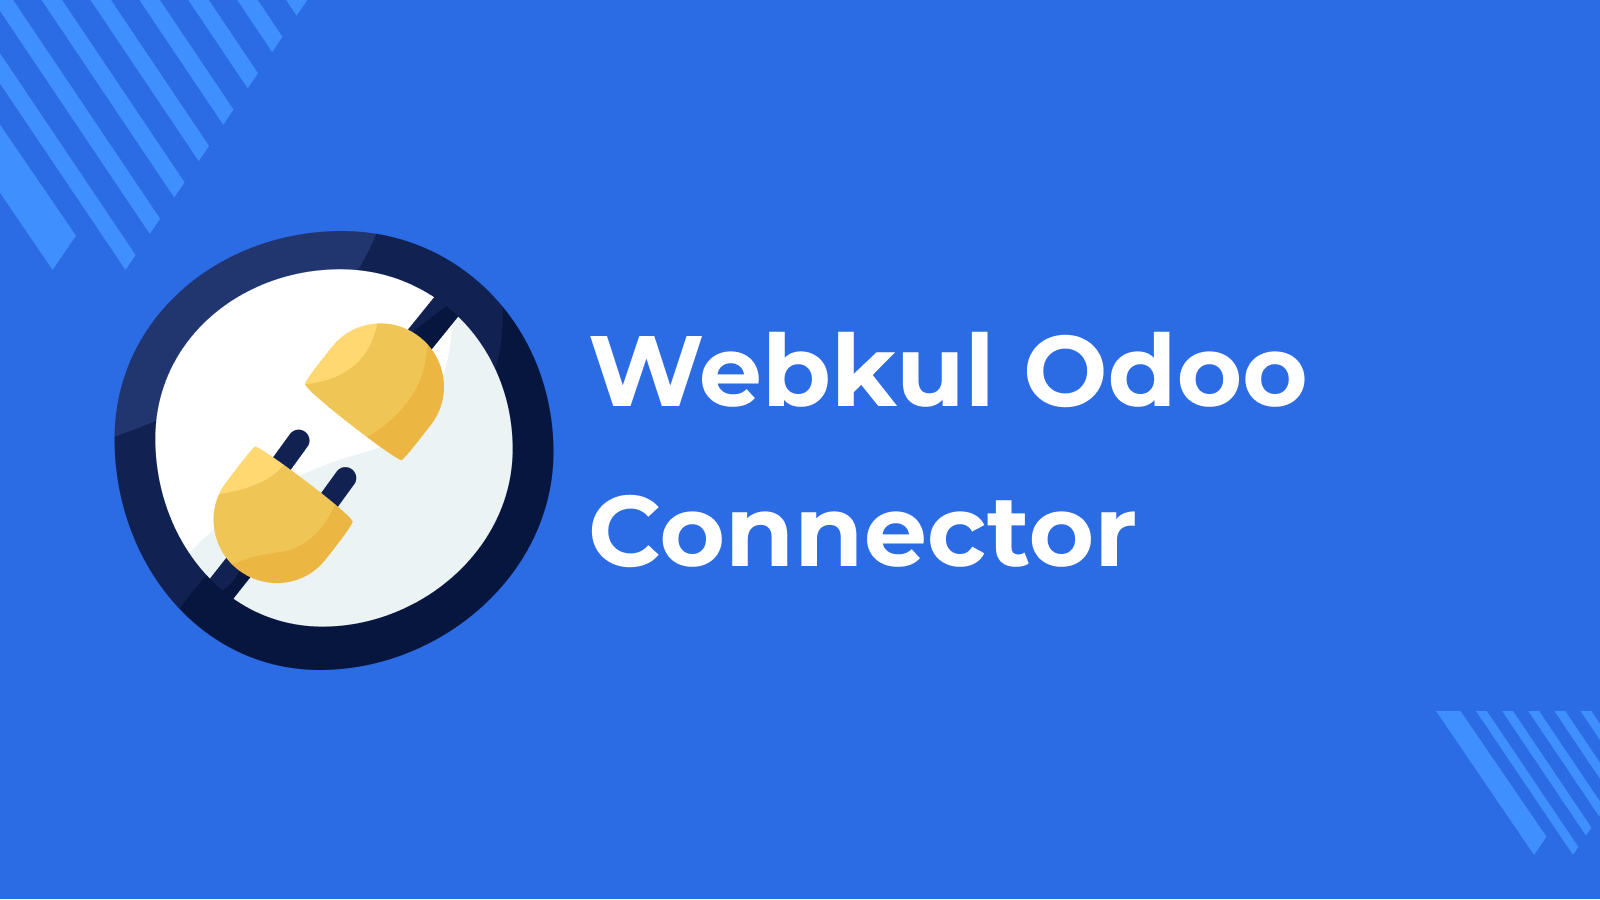 Webkul Odoo Connector